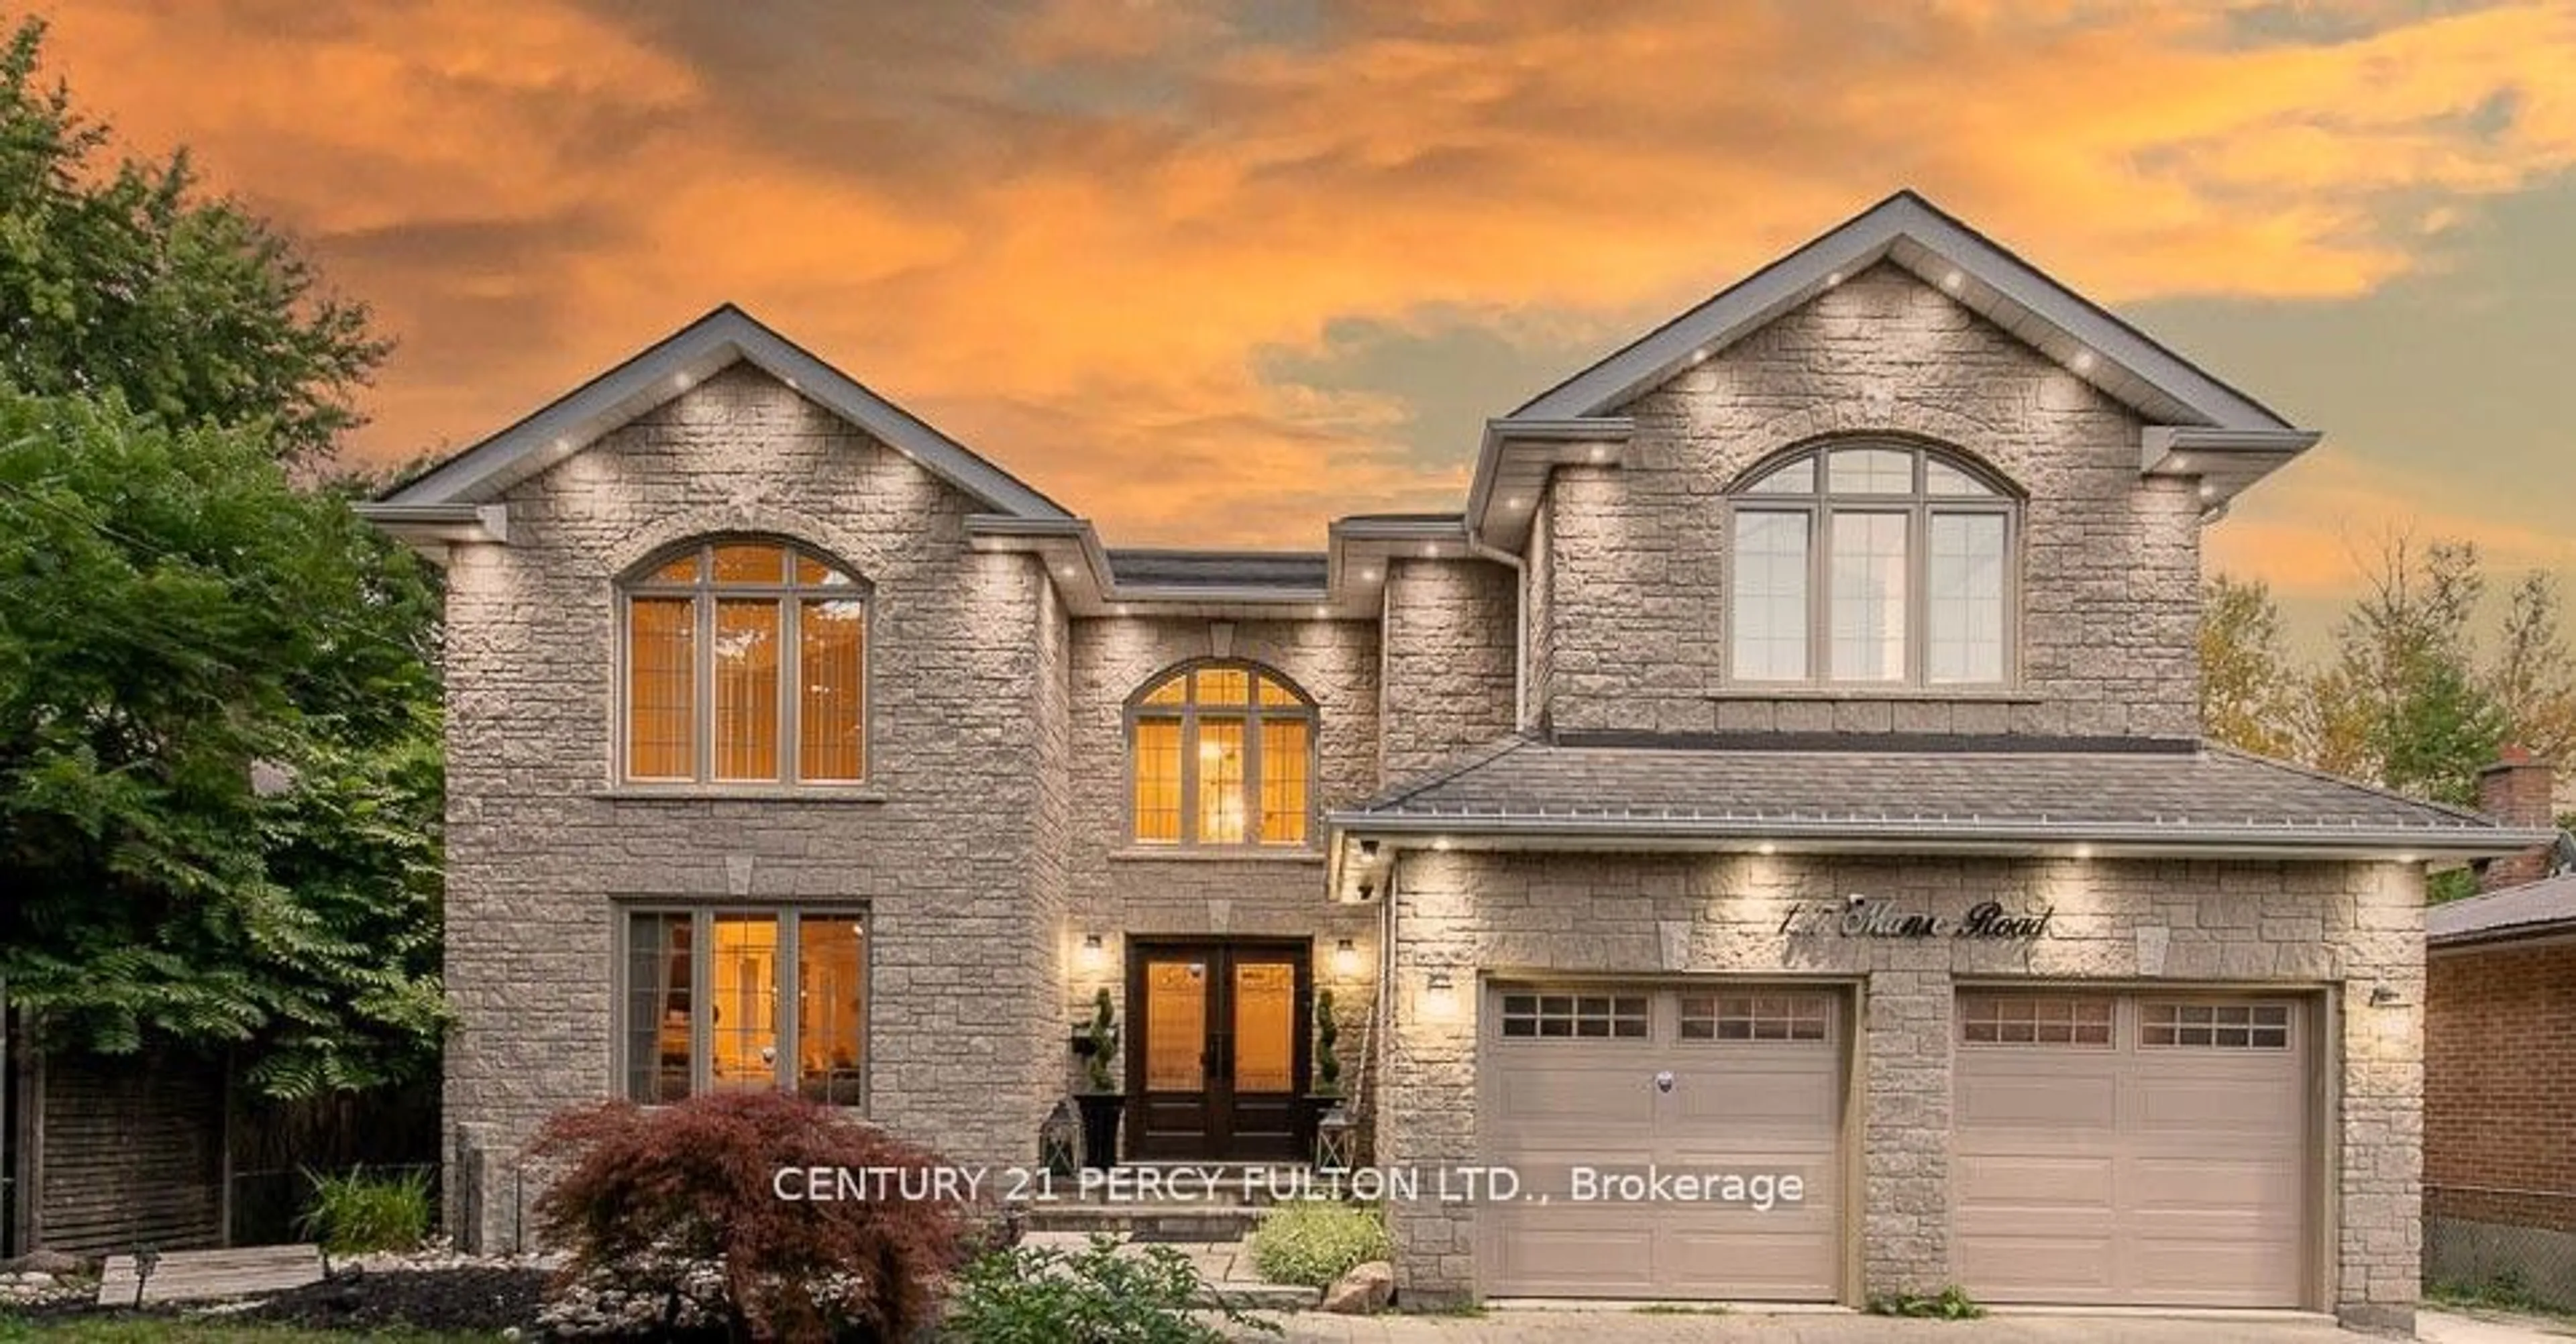 Home with brick exterior material for 147 Manse Rd, Toronto Ontario M1E 3V2